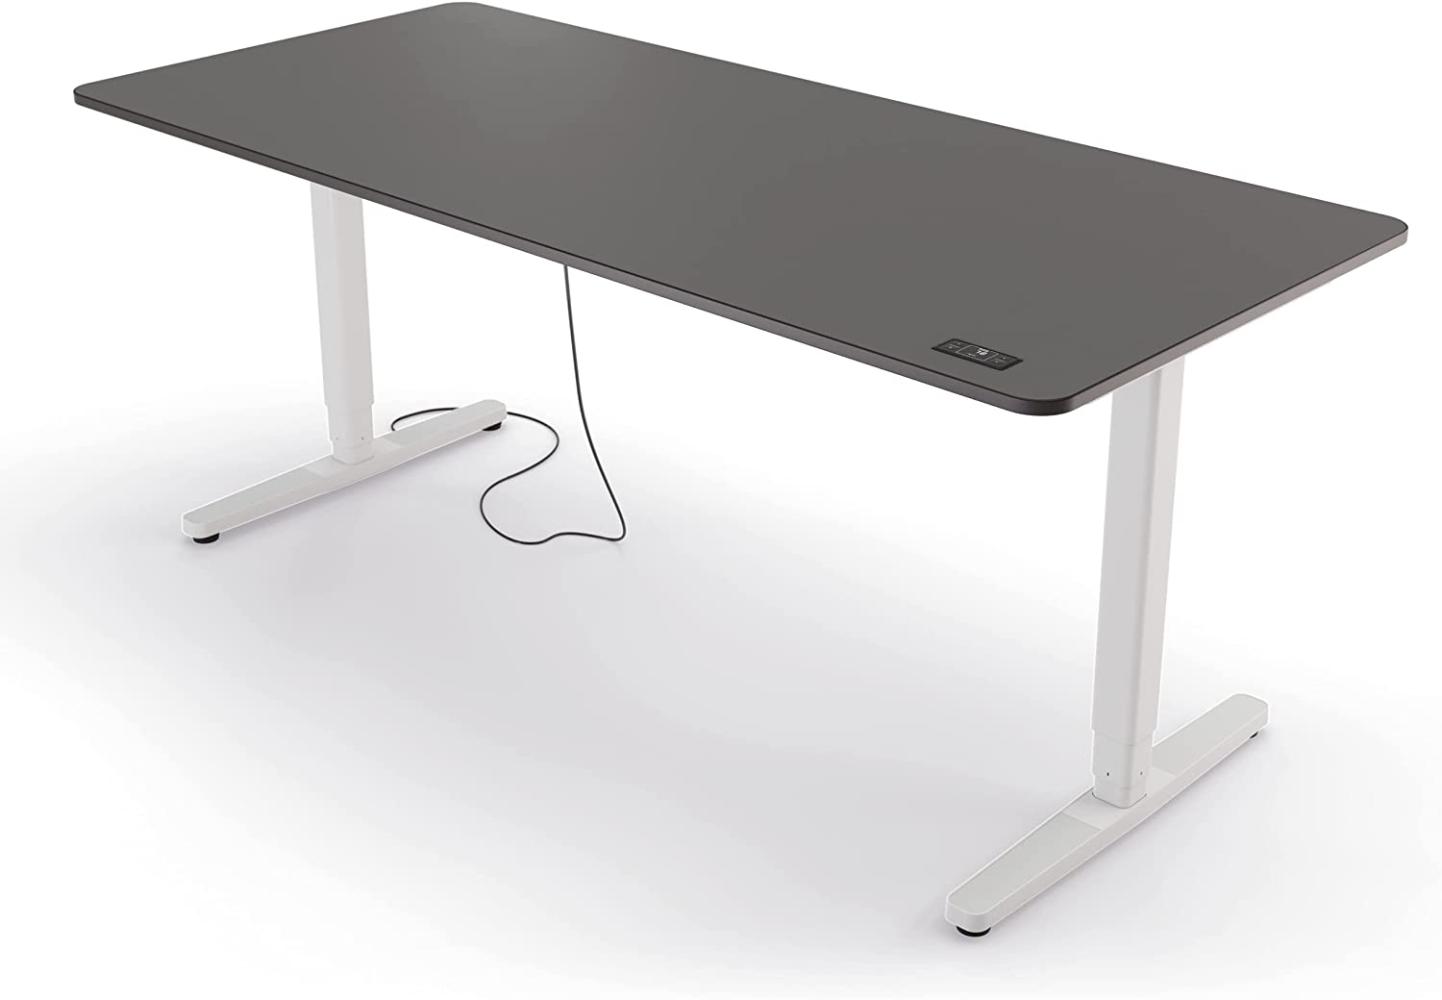 Yaasa Desk Pro II Elektrisch Höhenverstellbarer Schreibtisch, 180 x 80 cm, Dunkelgrau/Schwarz-Weiß, mit Speicherfunktion und Kollisionssensor Bild 1